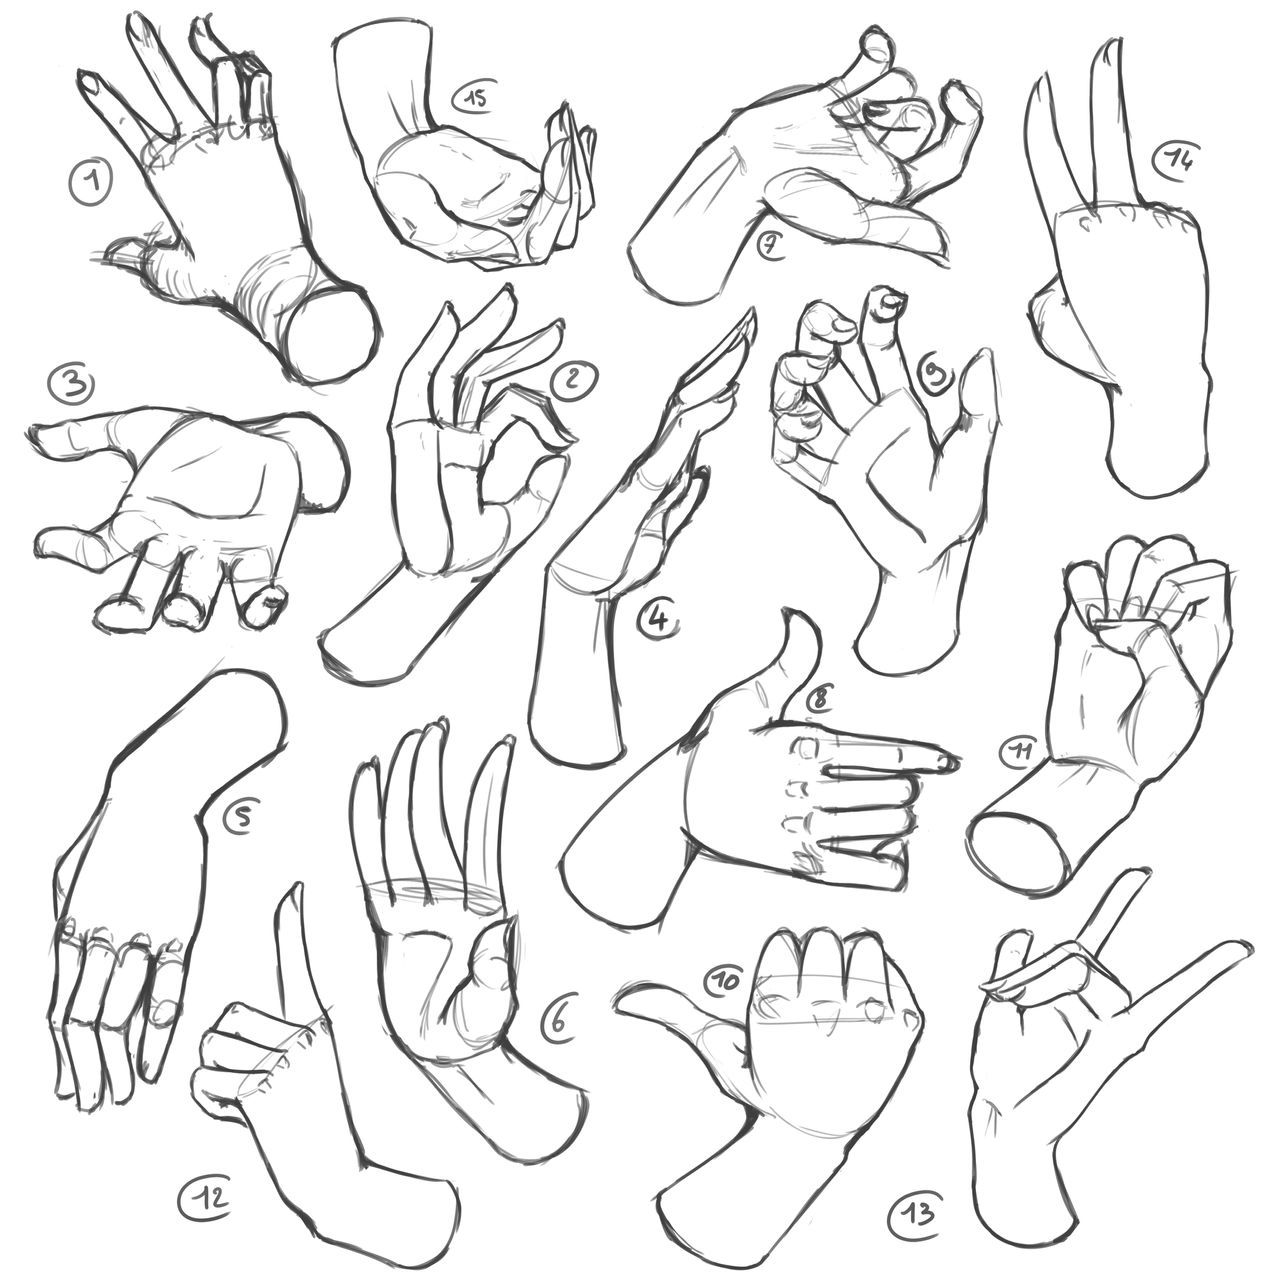 12 - Hands reference by AmantAmer on DeviantArt